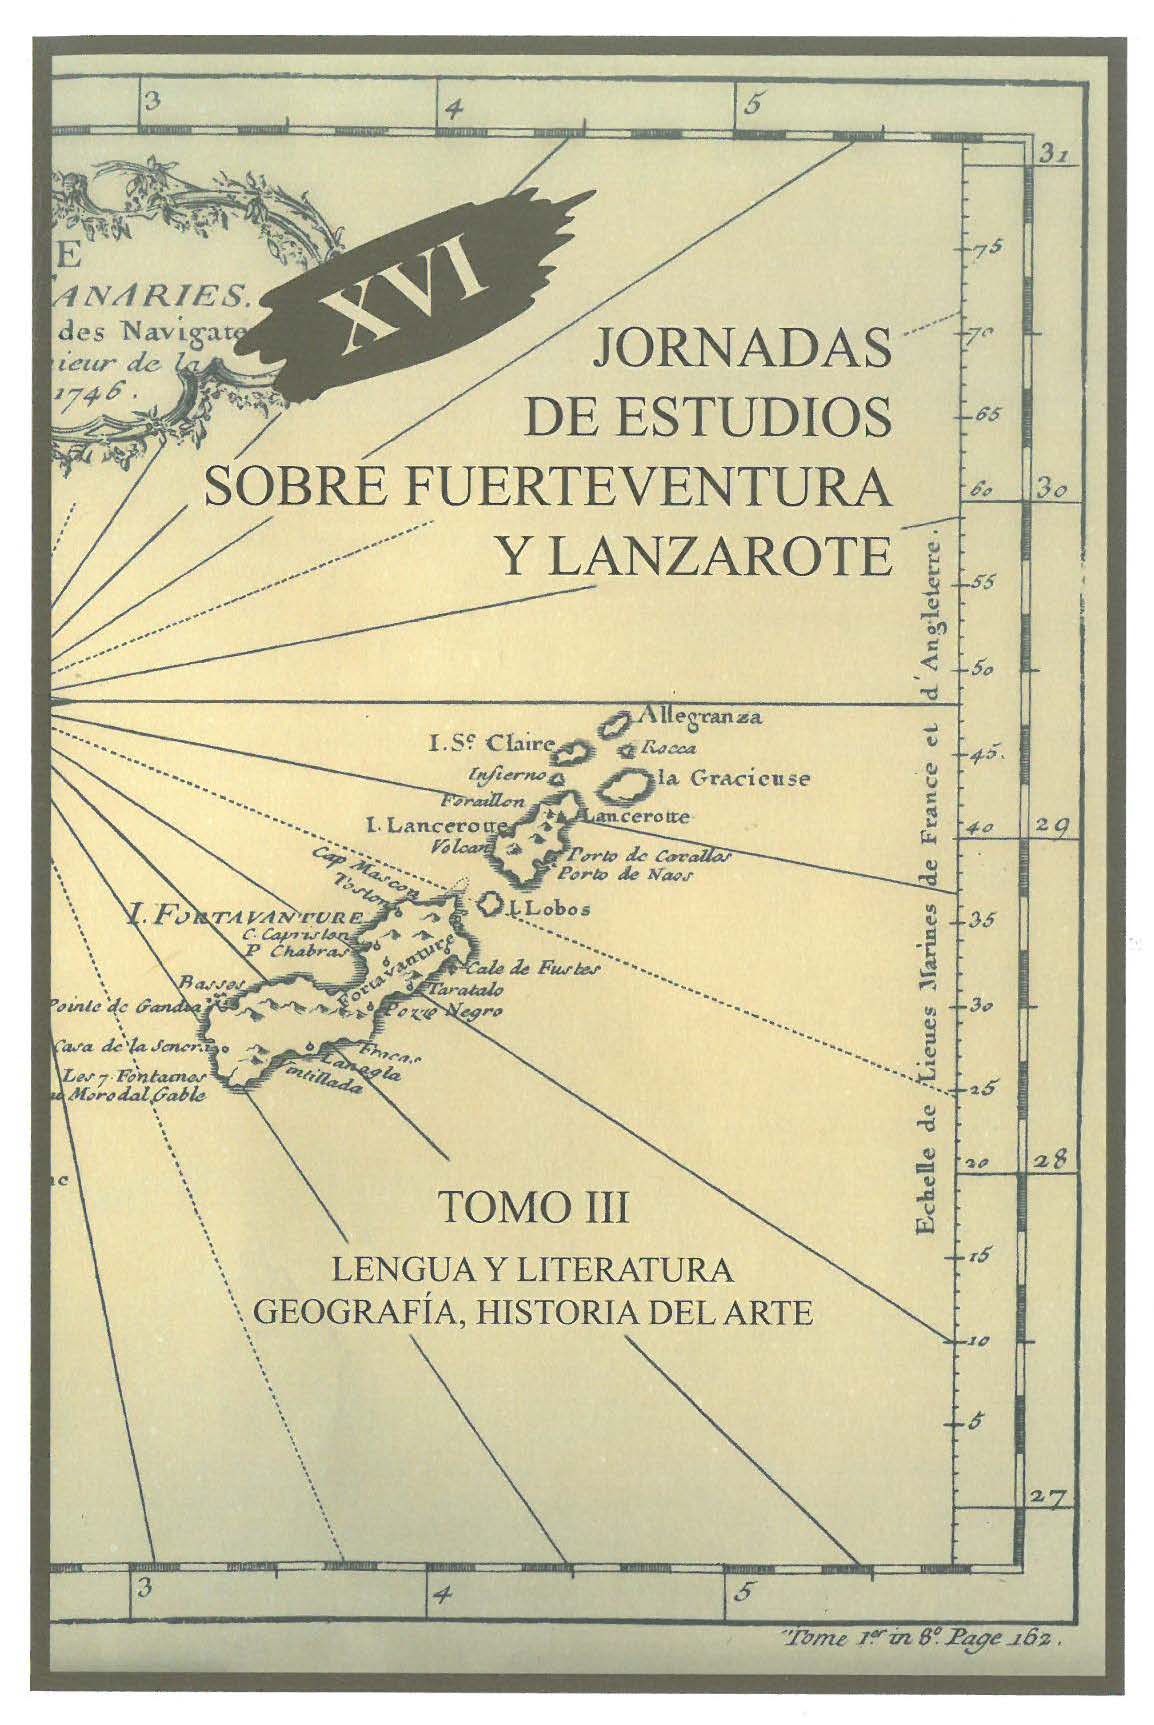 Toponimia rara de Lanzarote y Fuerteventura II. Gambuesa y otros portuguesismos